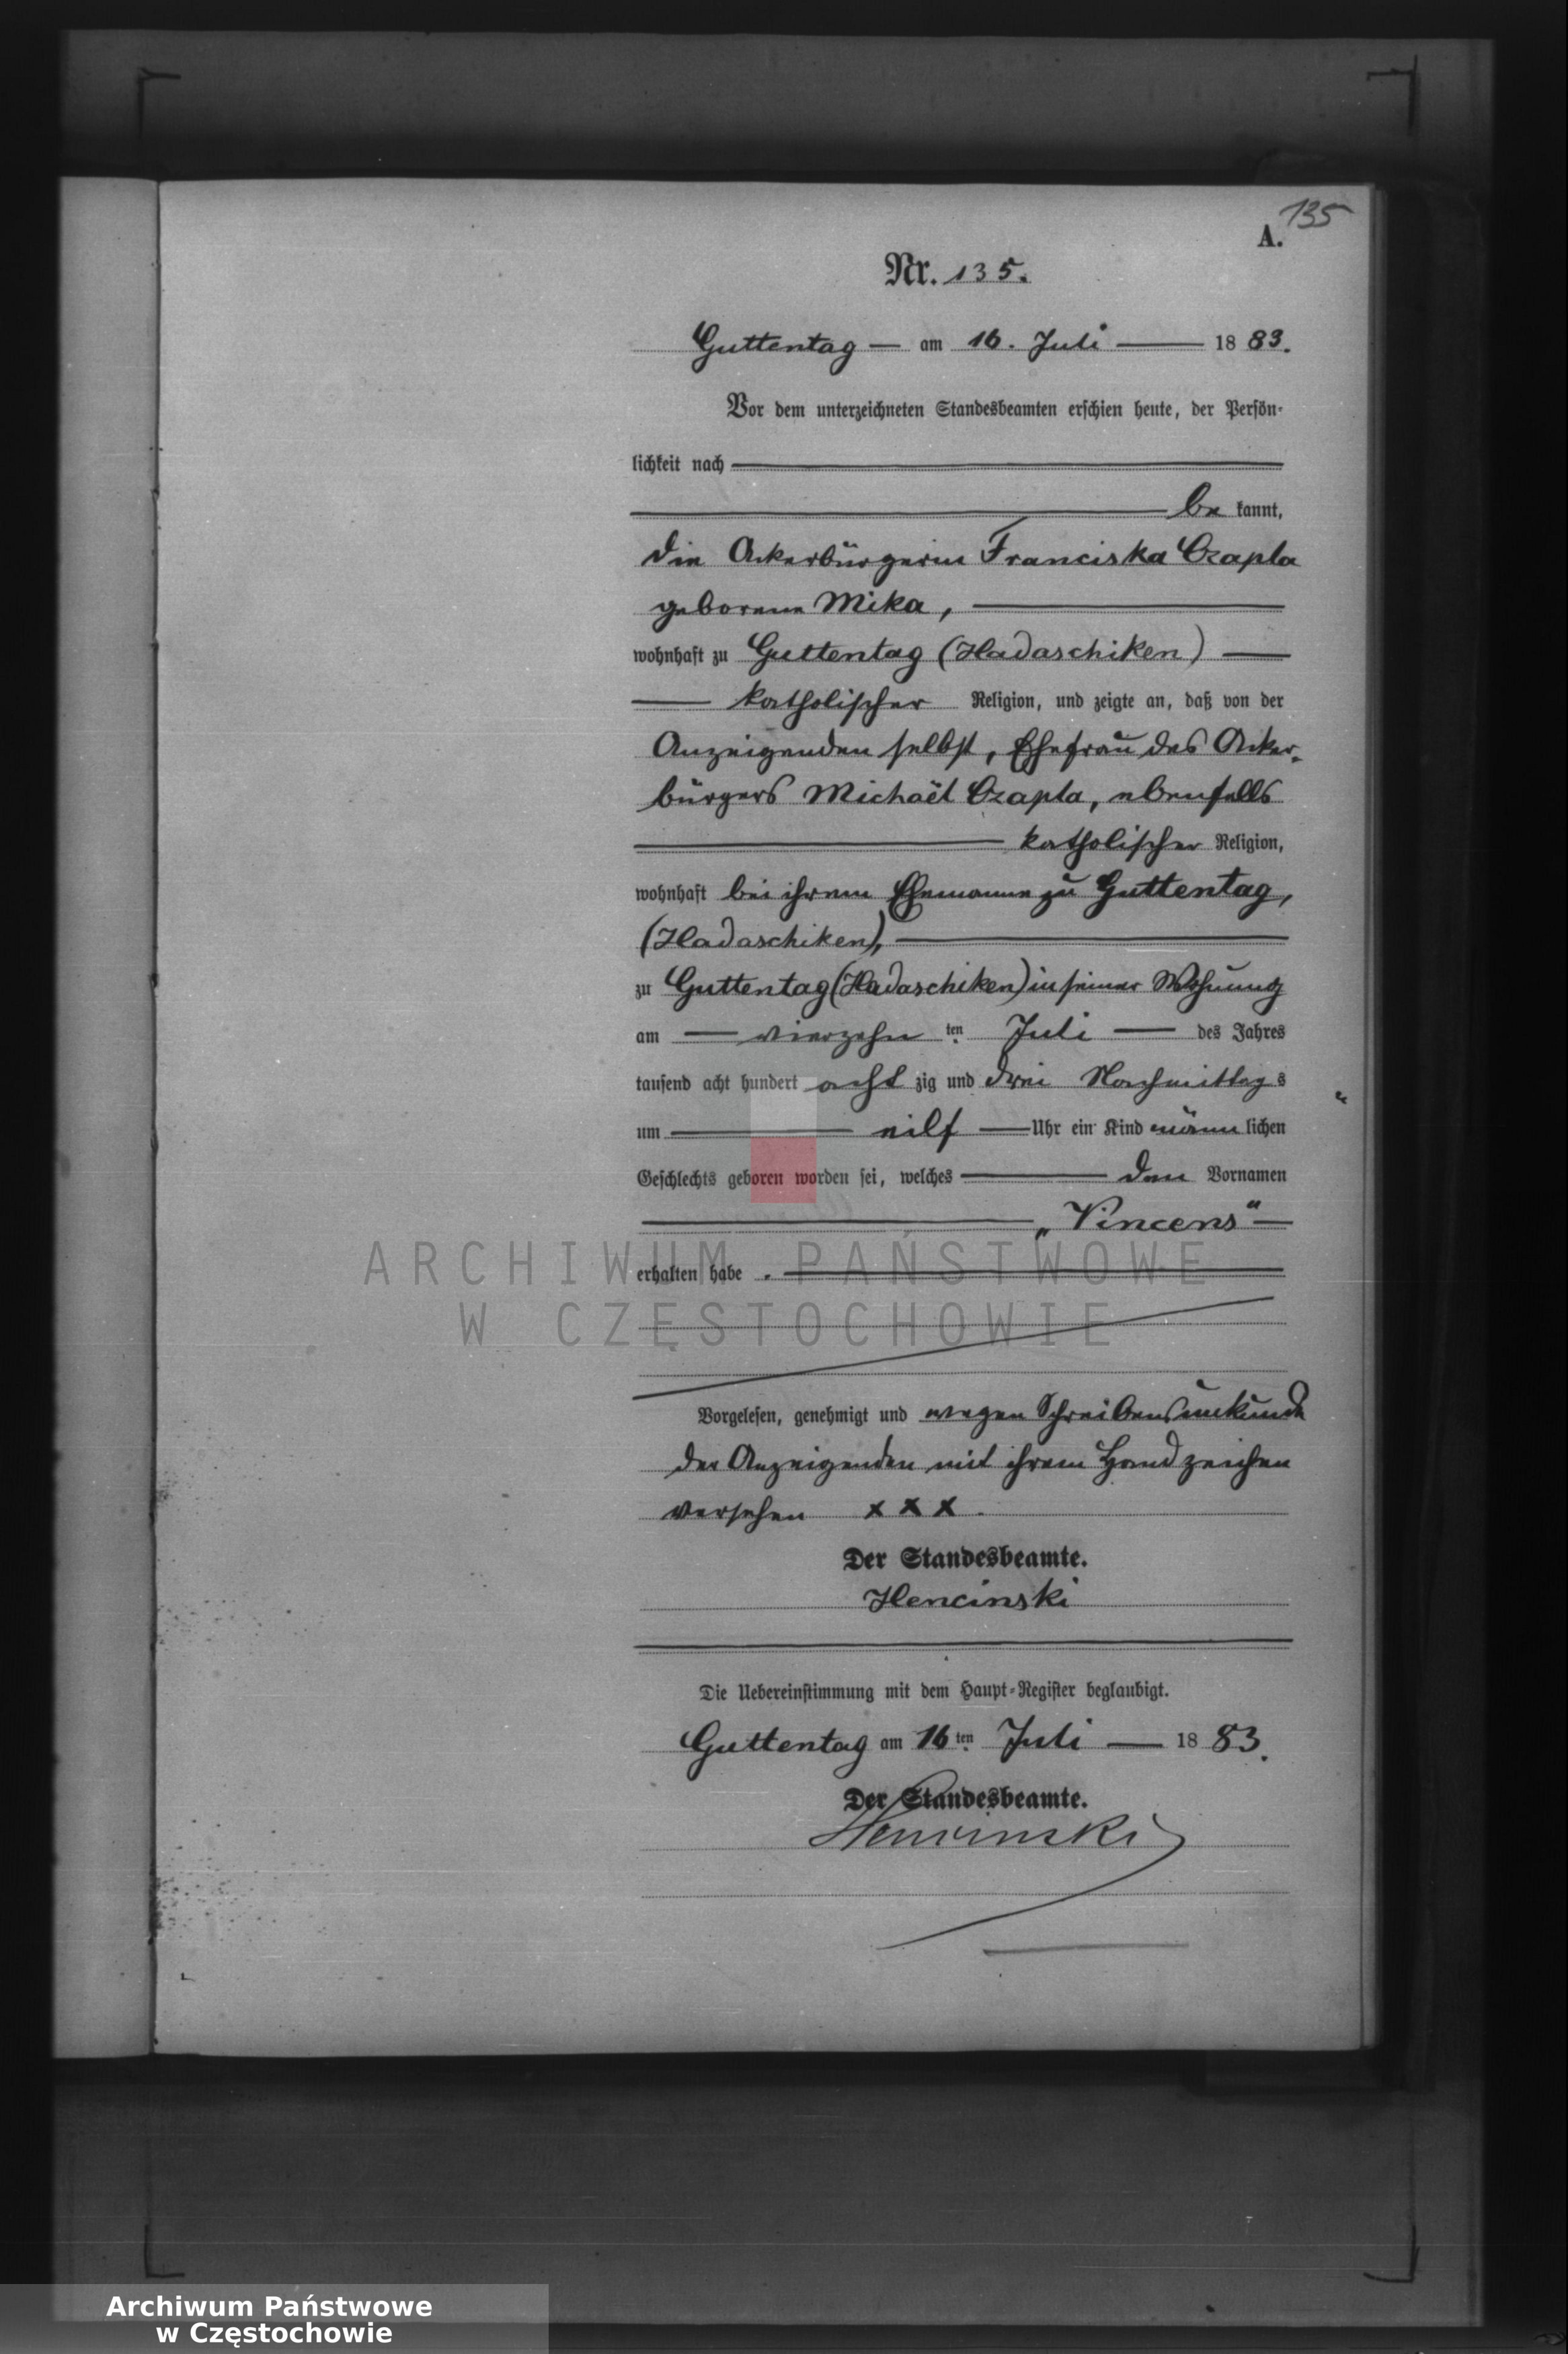 Skan z jednostki: Geburts - Neben Register des Königlich Preussischen Standesamts Guttentag im Kreise Lublinitz pro 1883.